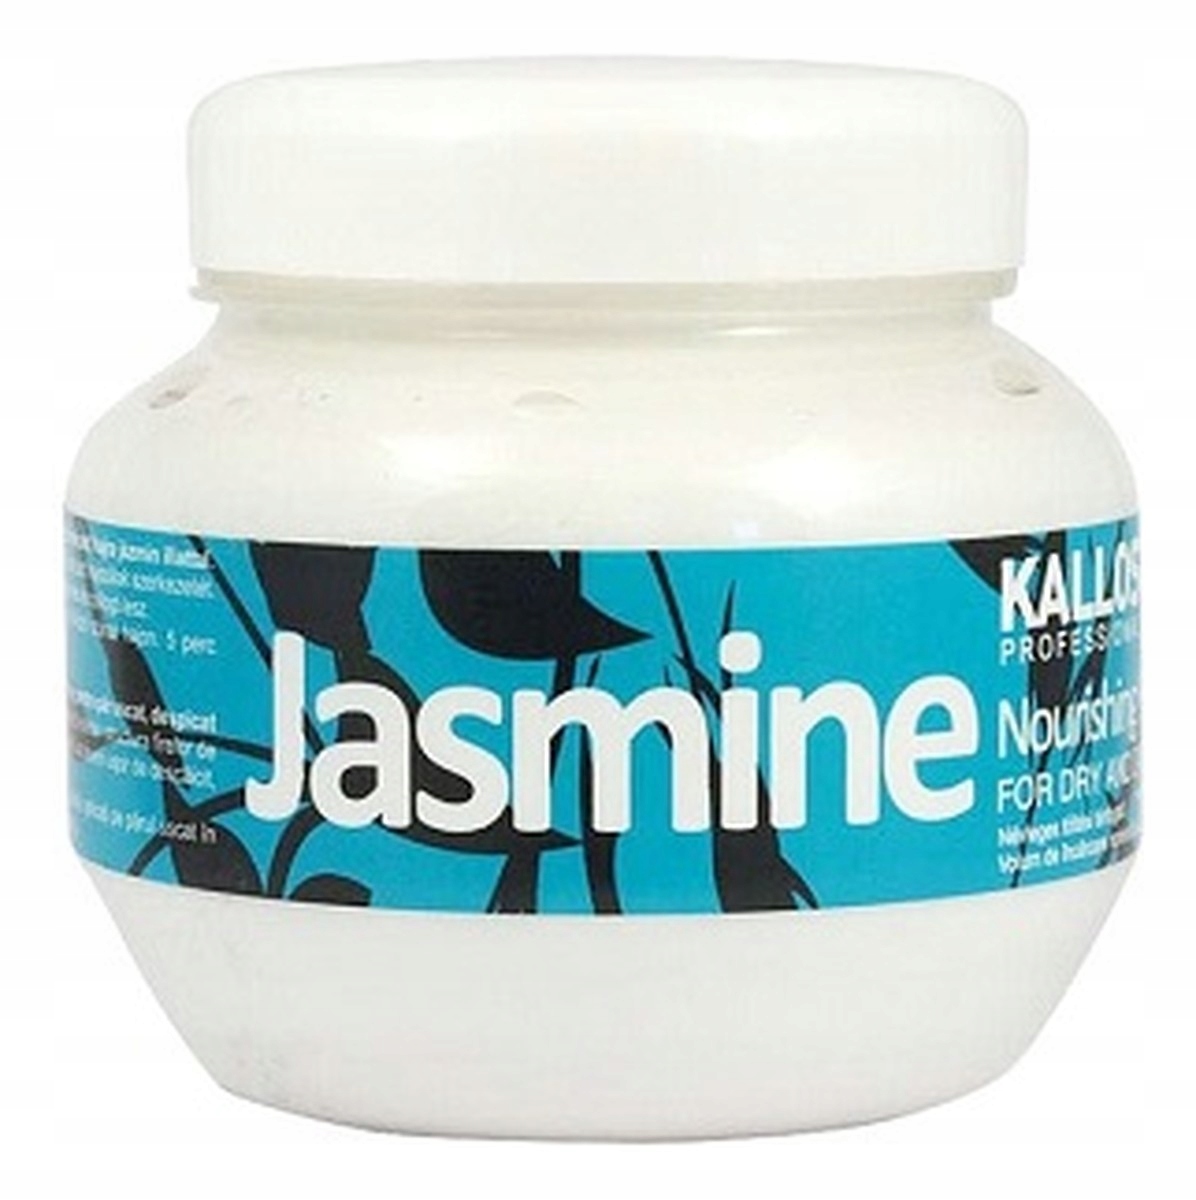 kallos jasmin odżywczy szampon jaśminowy do włosów suchych 1000ml